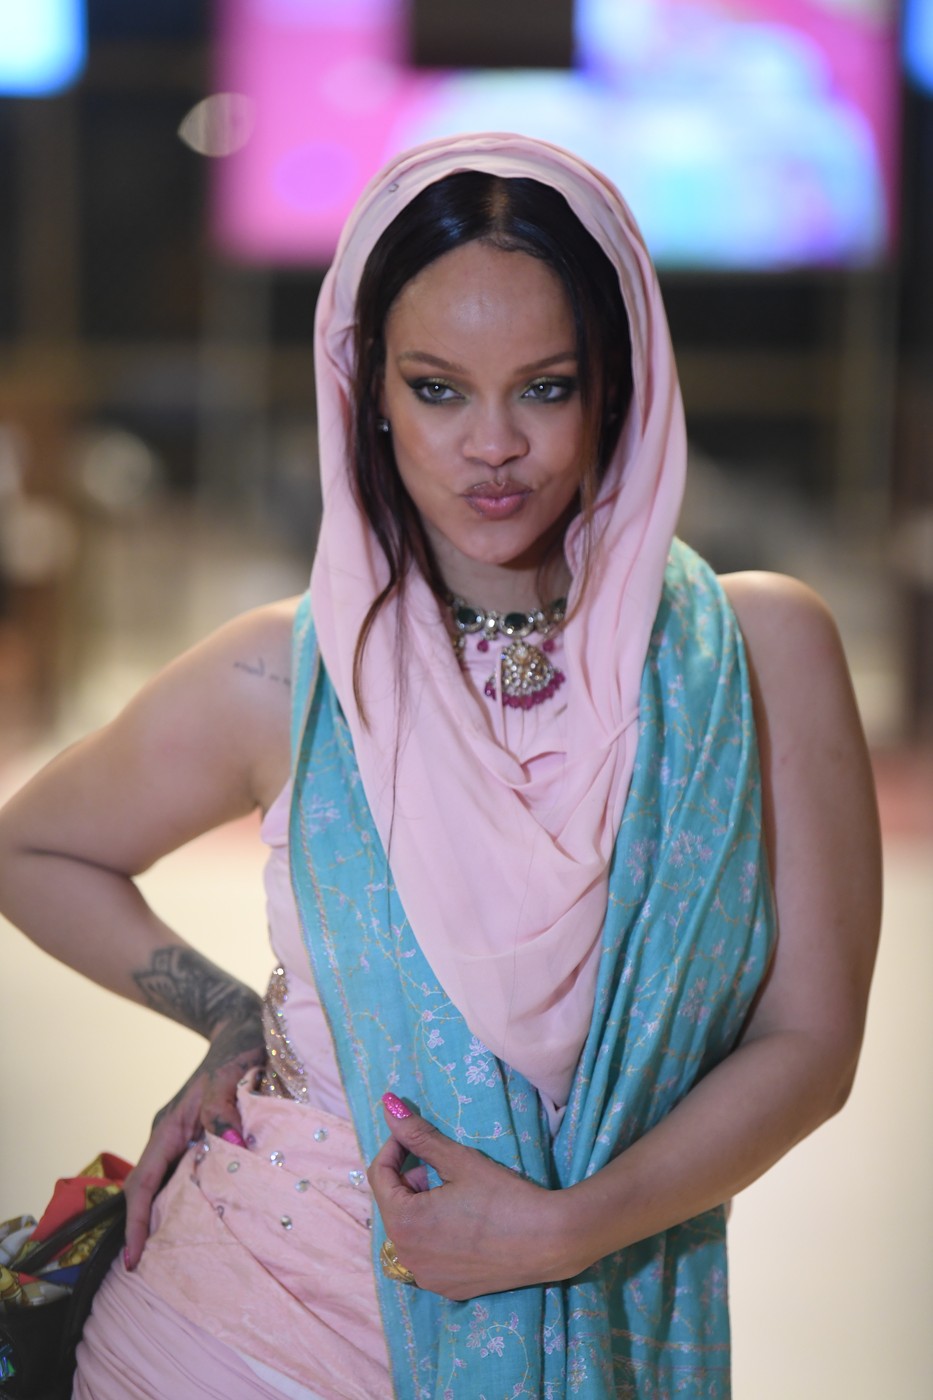 Rihanna a fost criticată pentru performanța ei. Aici poartă un sari roz și bleu care îi vine foarte bine